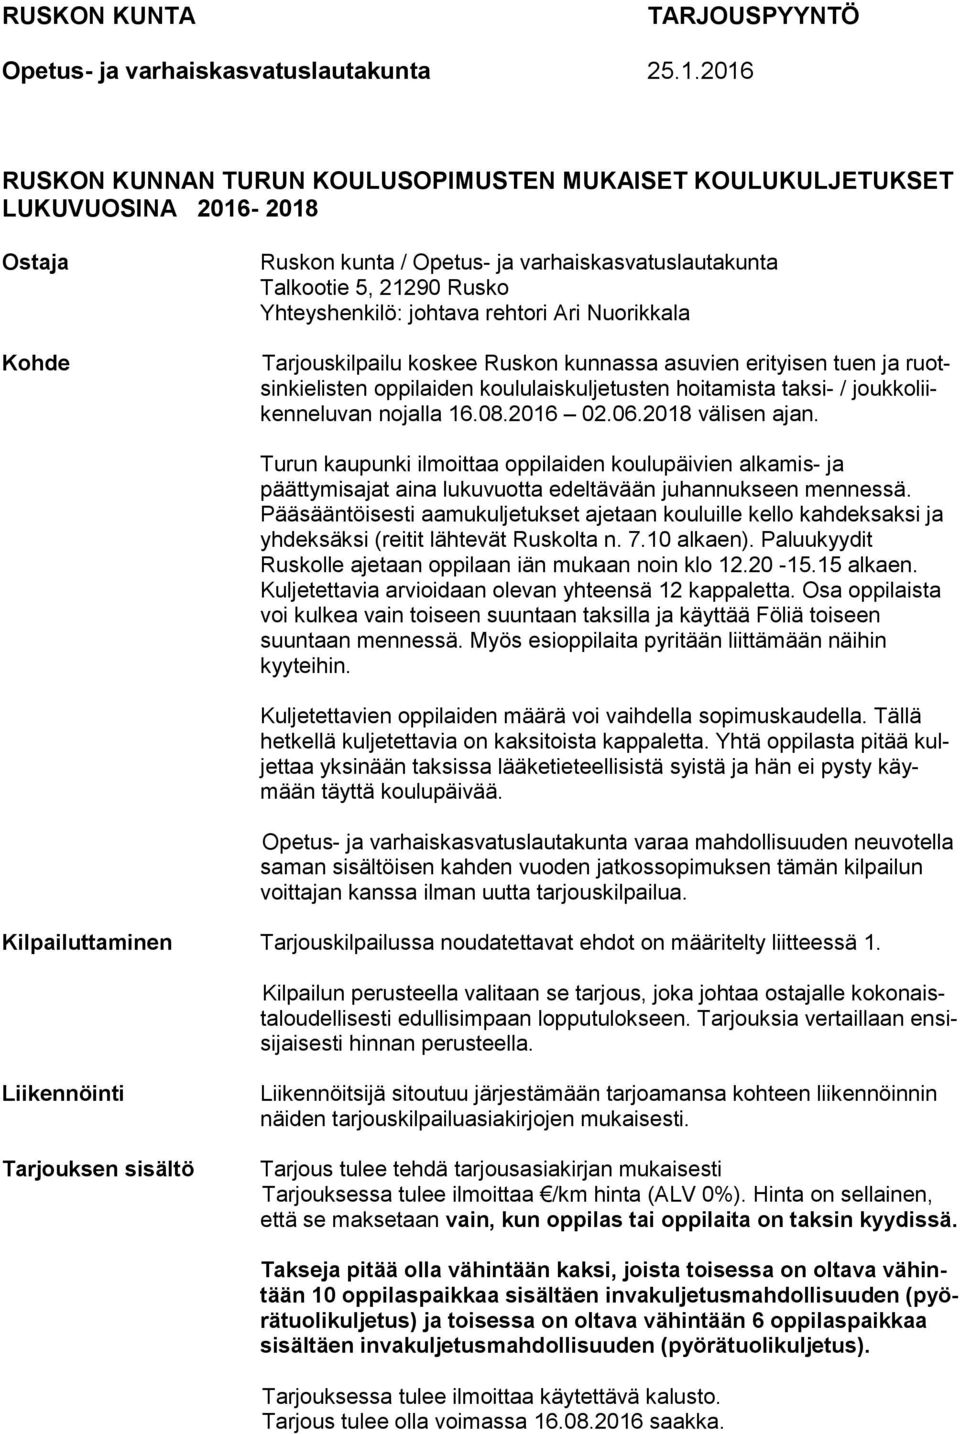 johtava rehtori Ari Nuorikkala Tarjouskilpailu koskee Ruskon kunnassa asuvien erityisen tuen ja ruotsinkielisten oppilaiden koululaiskuljetusten hoitamista taksi- / joukkoliikenneluvan nojalla 16.08.